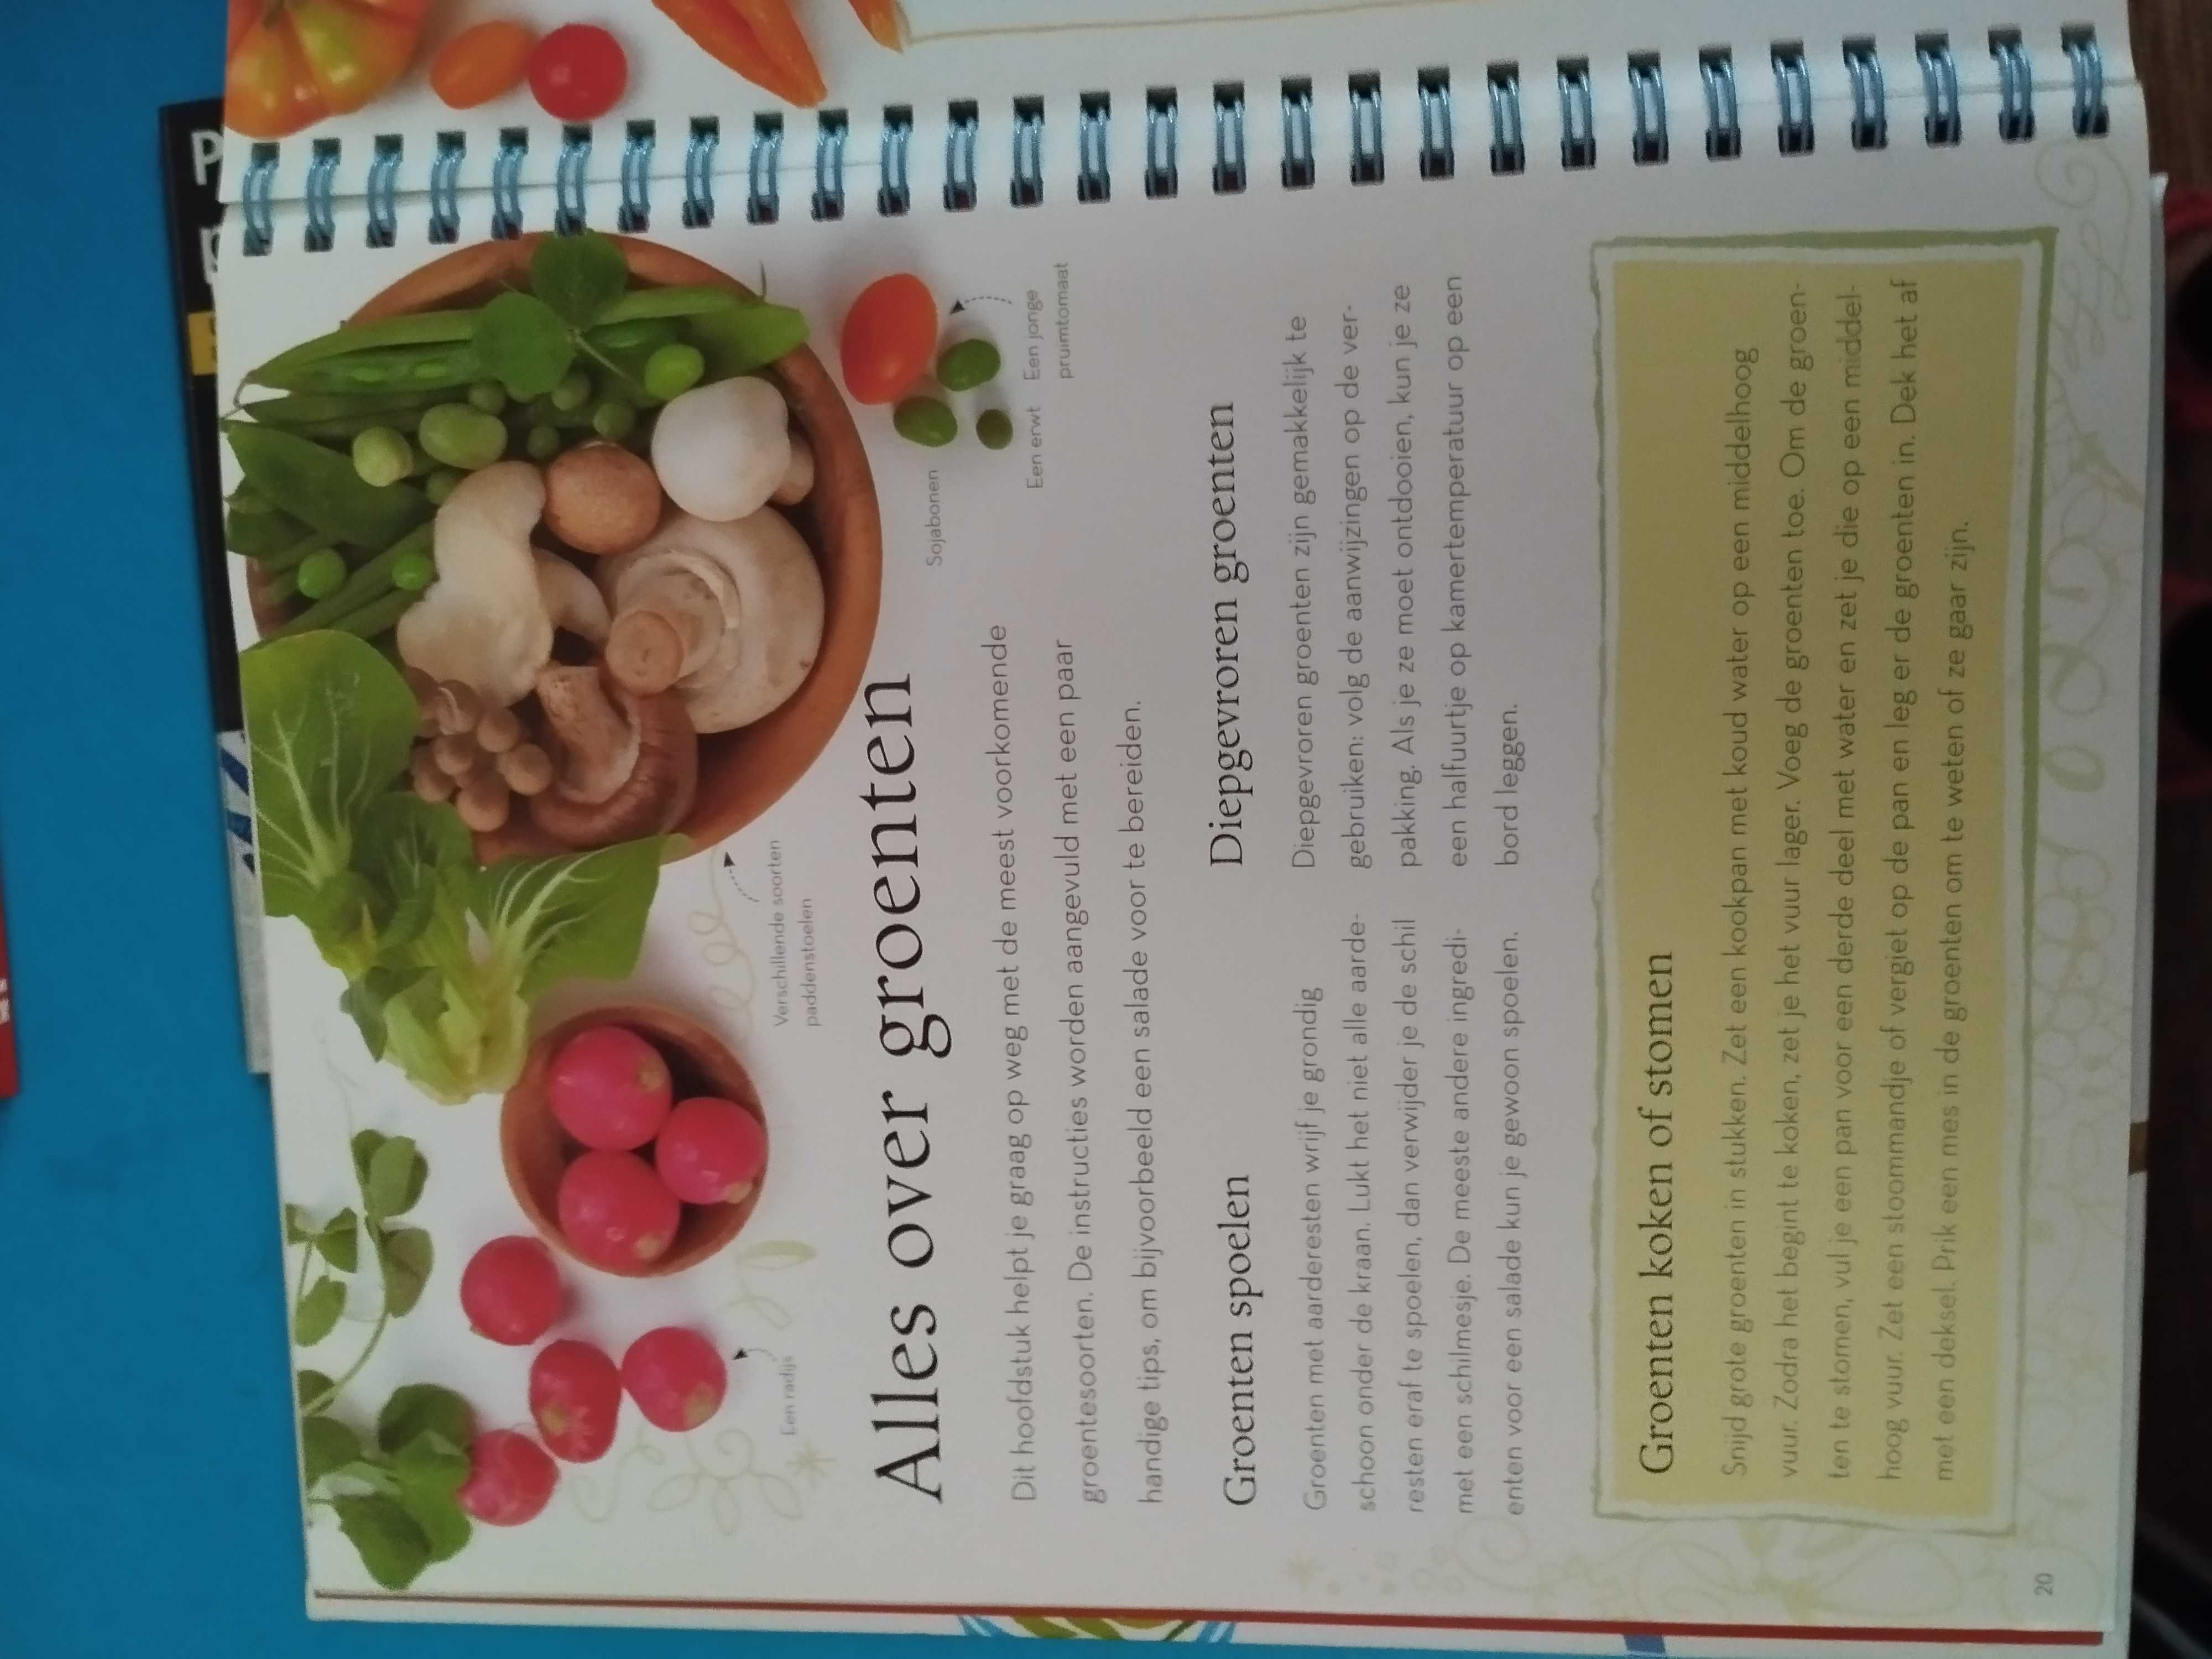 Książka kucharska dla dzieci po niderlandzku